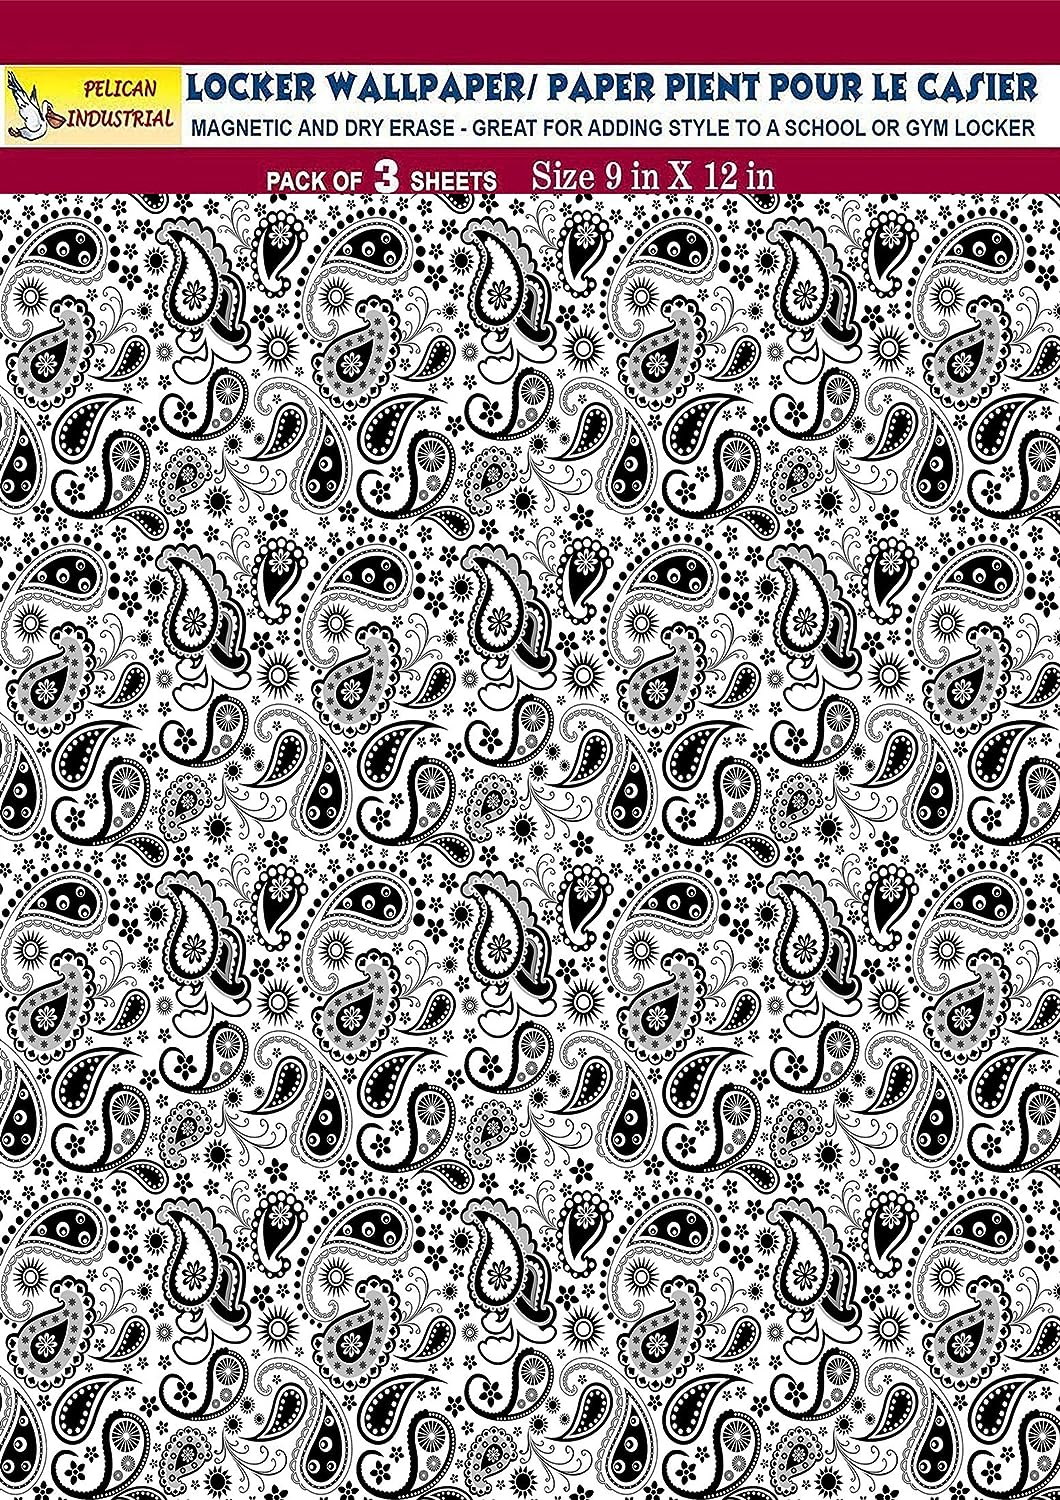 PELICAN INDUSTRIAL Magnetic Locker Wallpaper (Full Sheet Magnetic) - (Black & White Paisley) - Pack of 3 Sheets - v2c